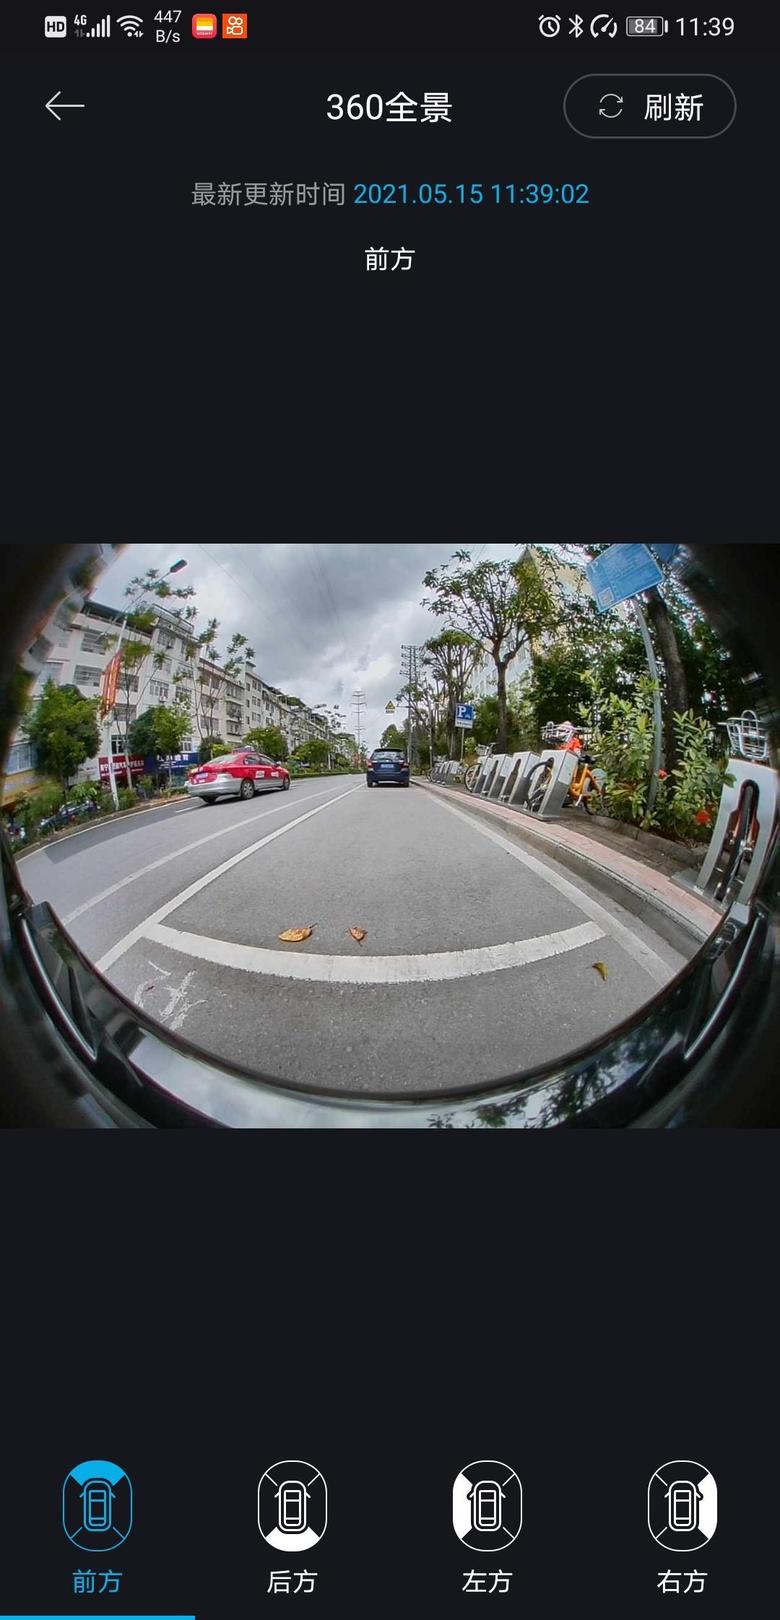 伊兰特 这个360是平时开车的时候自动录像吗？还是只有停车才有用？